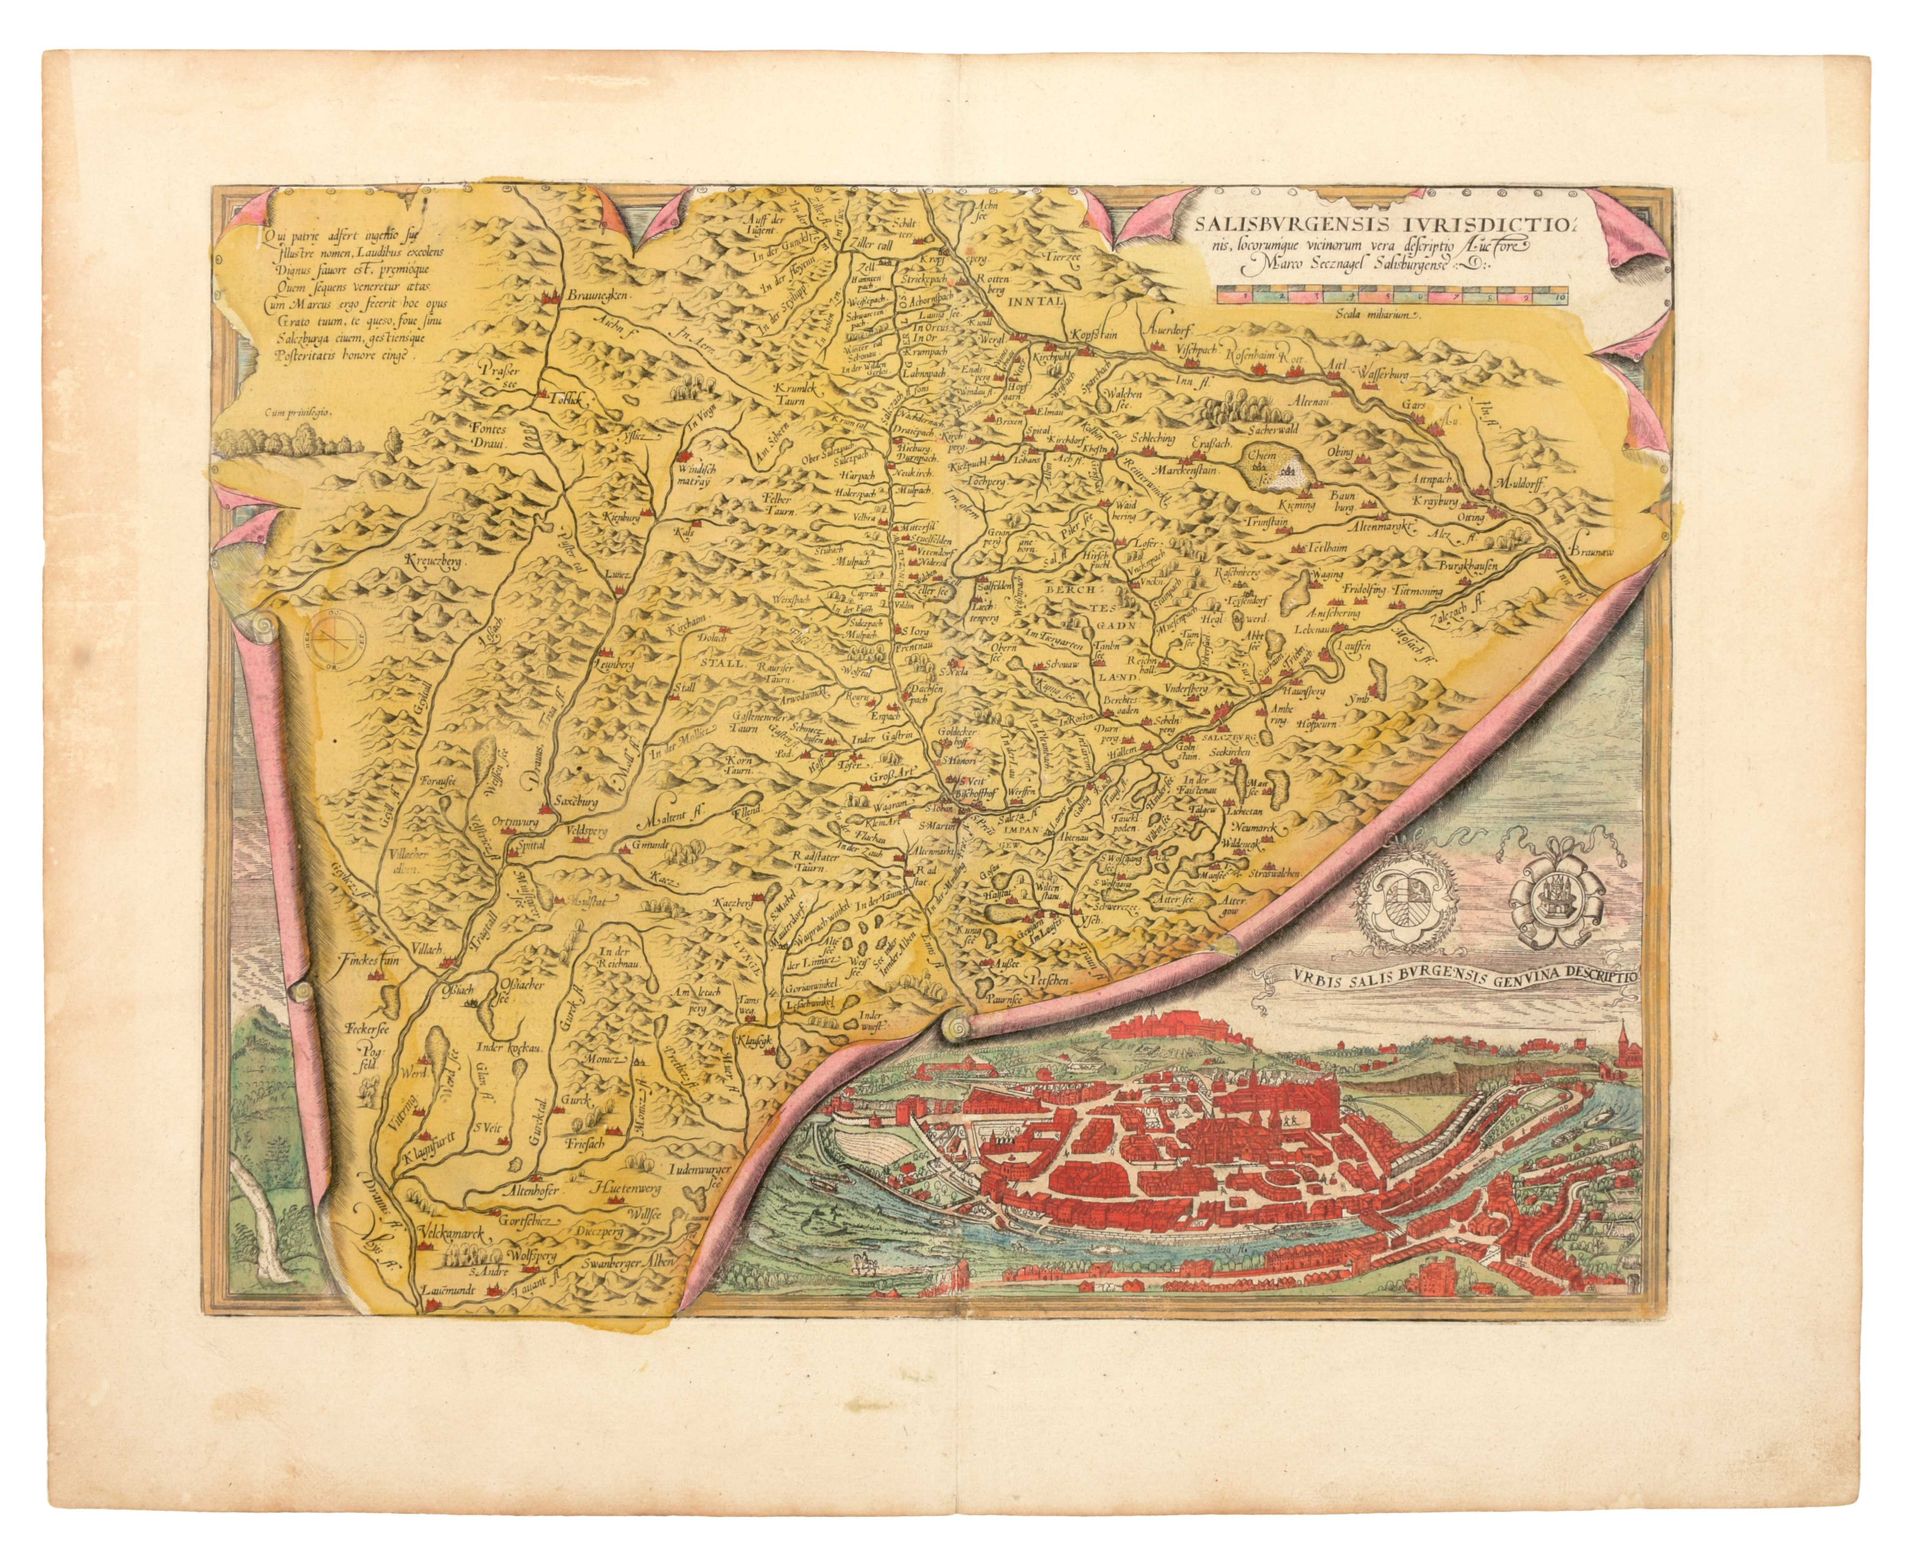 [SALZBURG] Salisburgensis Jurisdictio

Mapa original (34 x 44 cm) de A. Ortelius&hellip;